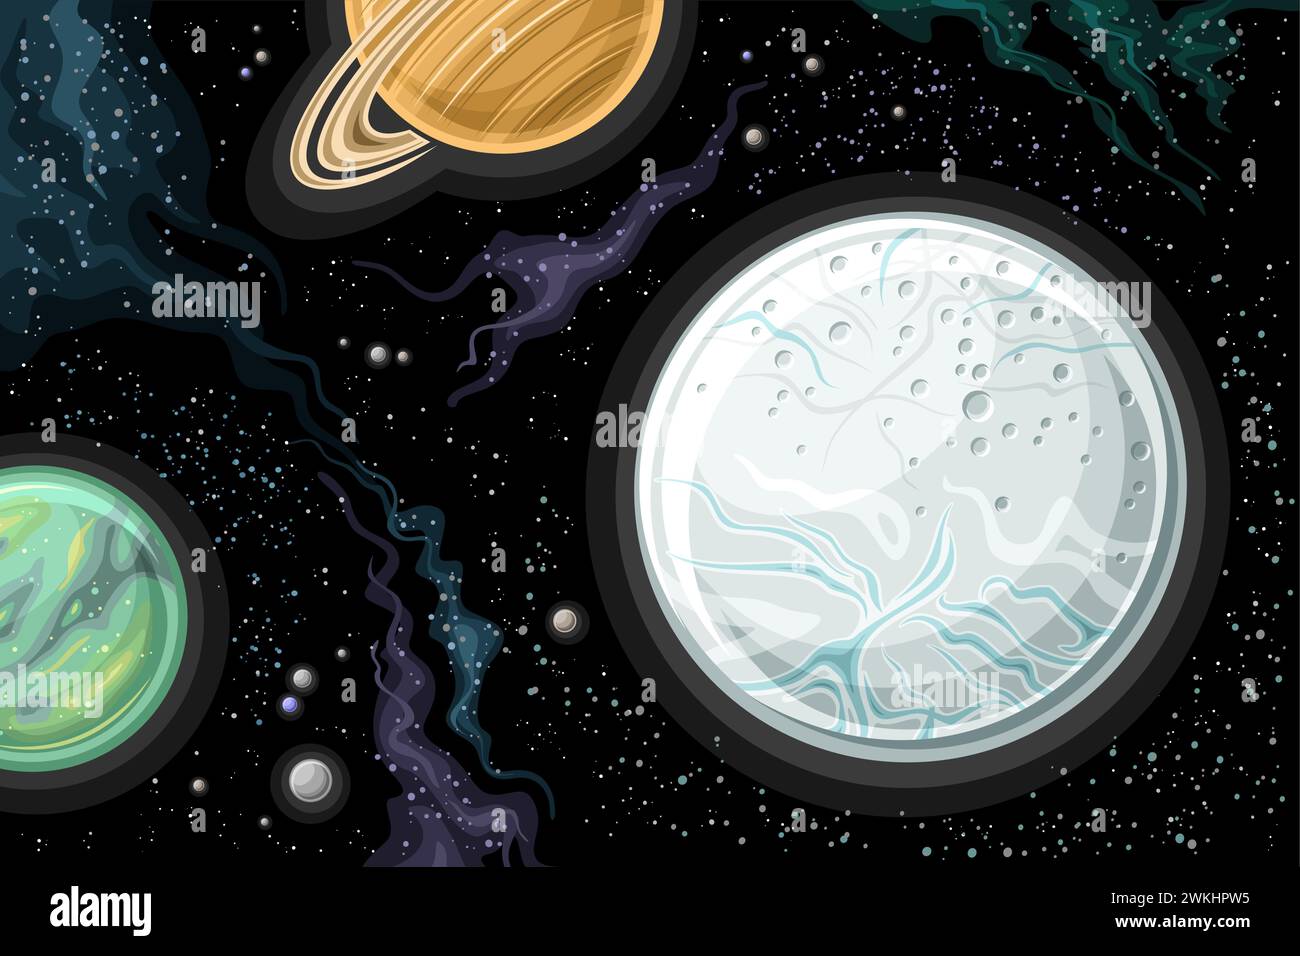 Grafico spaziale Vector Fantasy, poster orizzontale con cartoni animati Encelado e Titano, orbitante intorno a Saturno nello spazio profondo, futurista decorativo Illustrazione Vettoriale